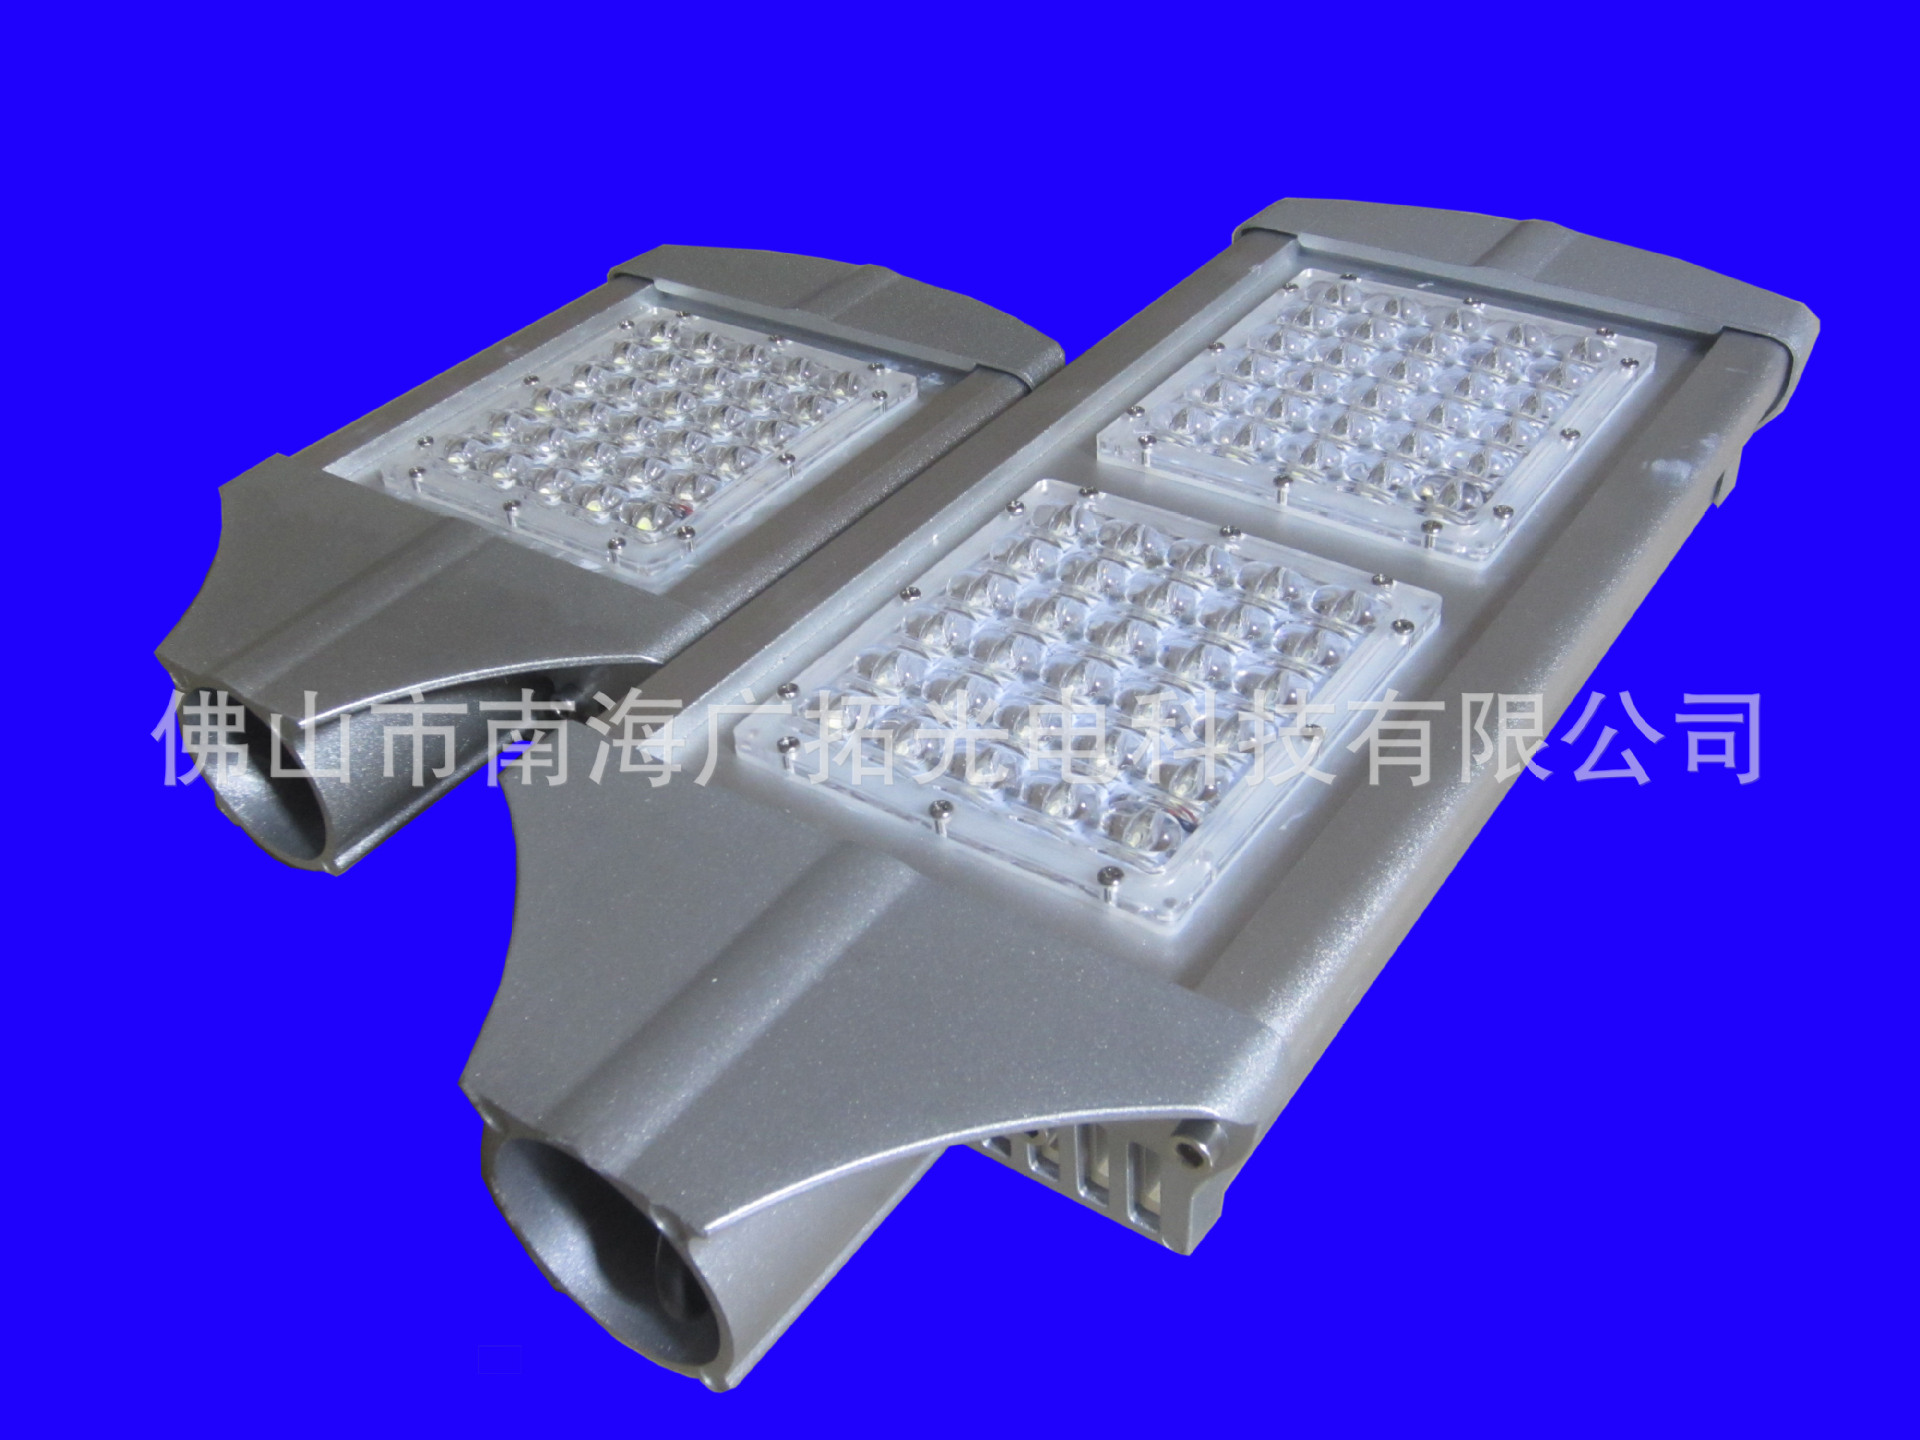 LED小模组路灯外壳 型材散热器 铝合金套件 图